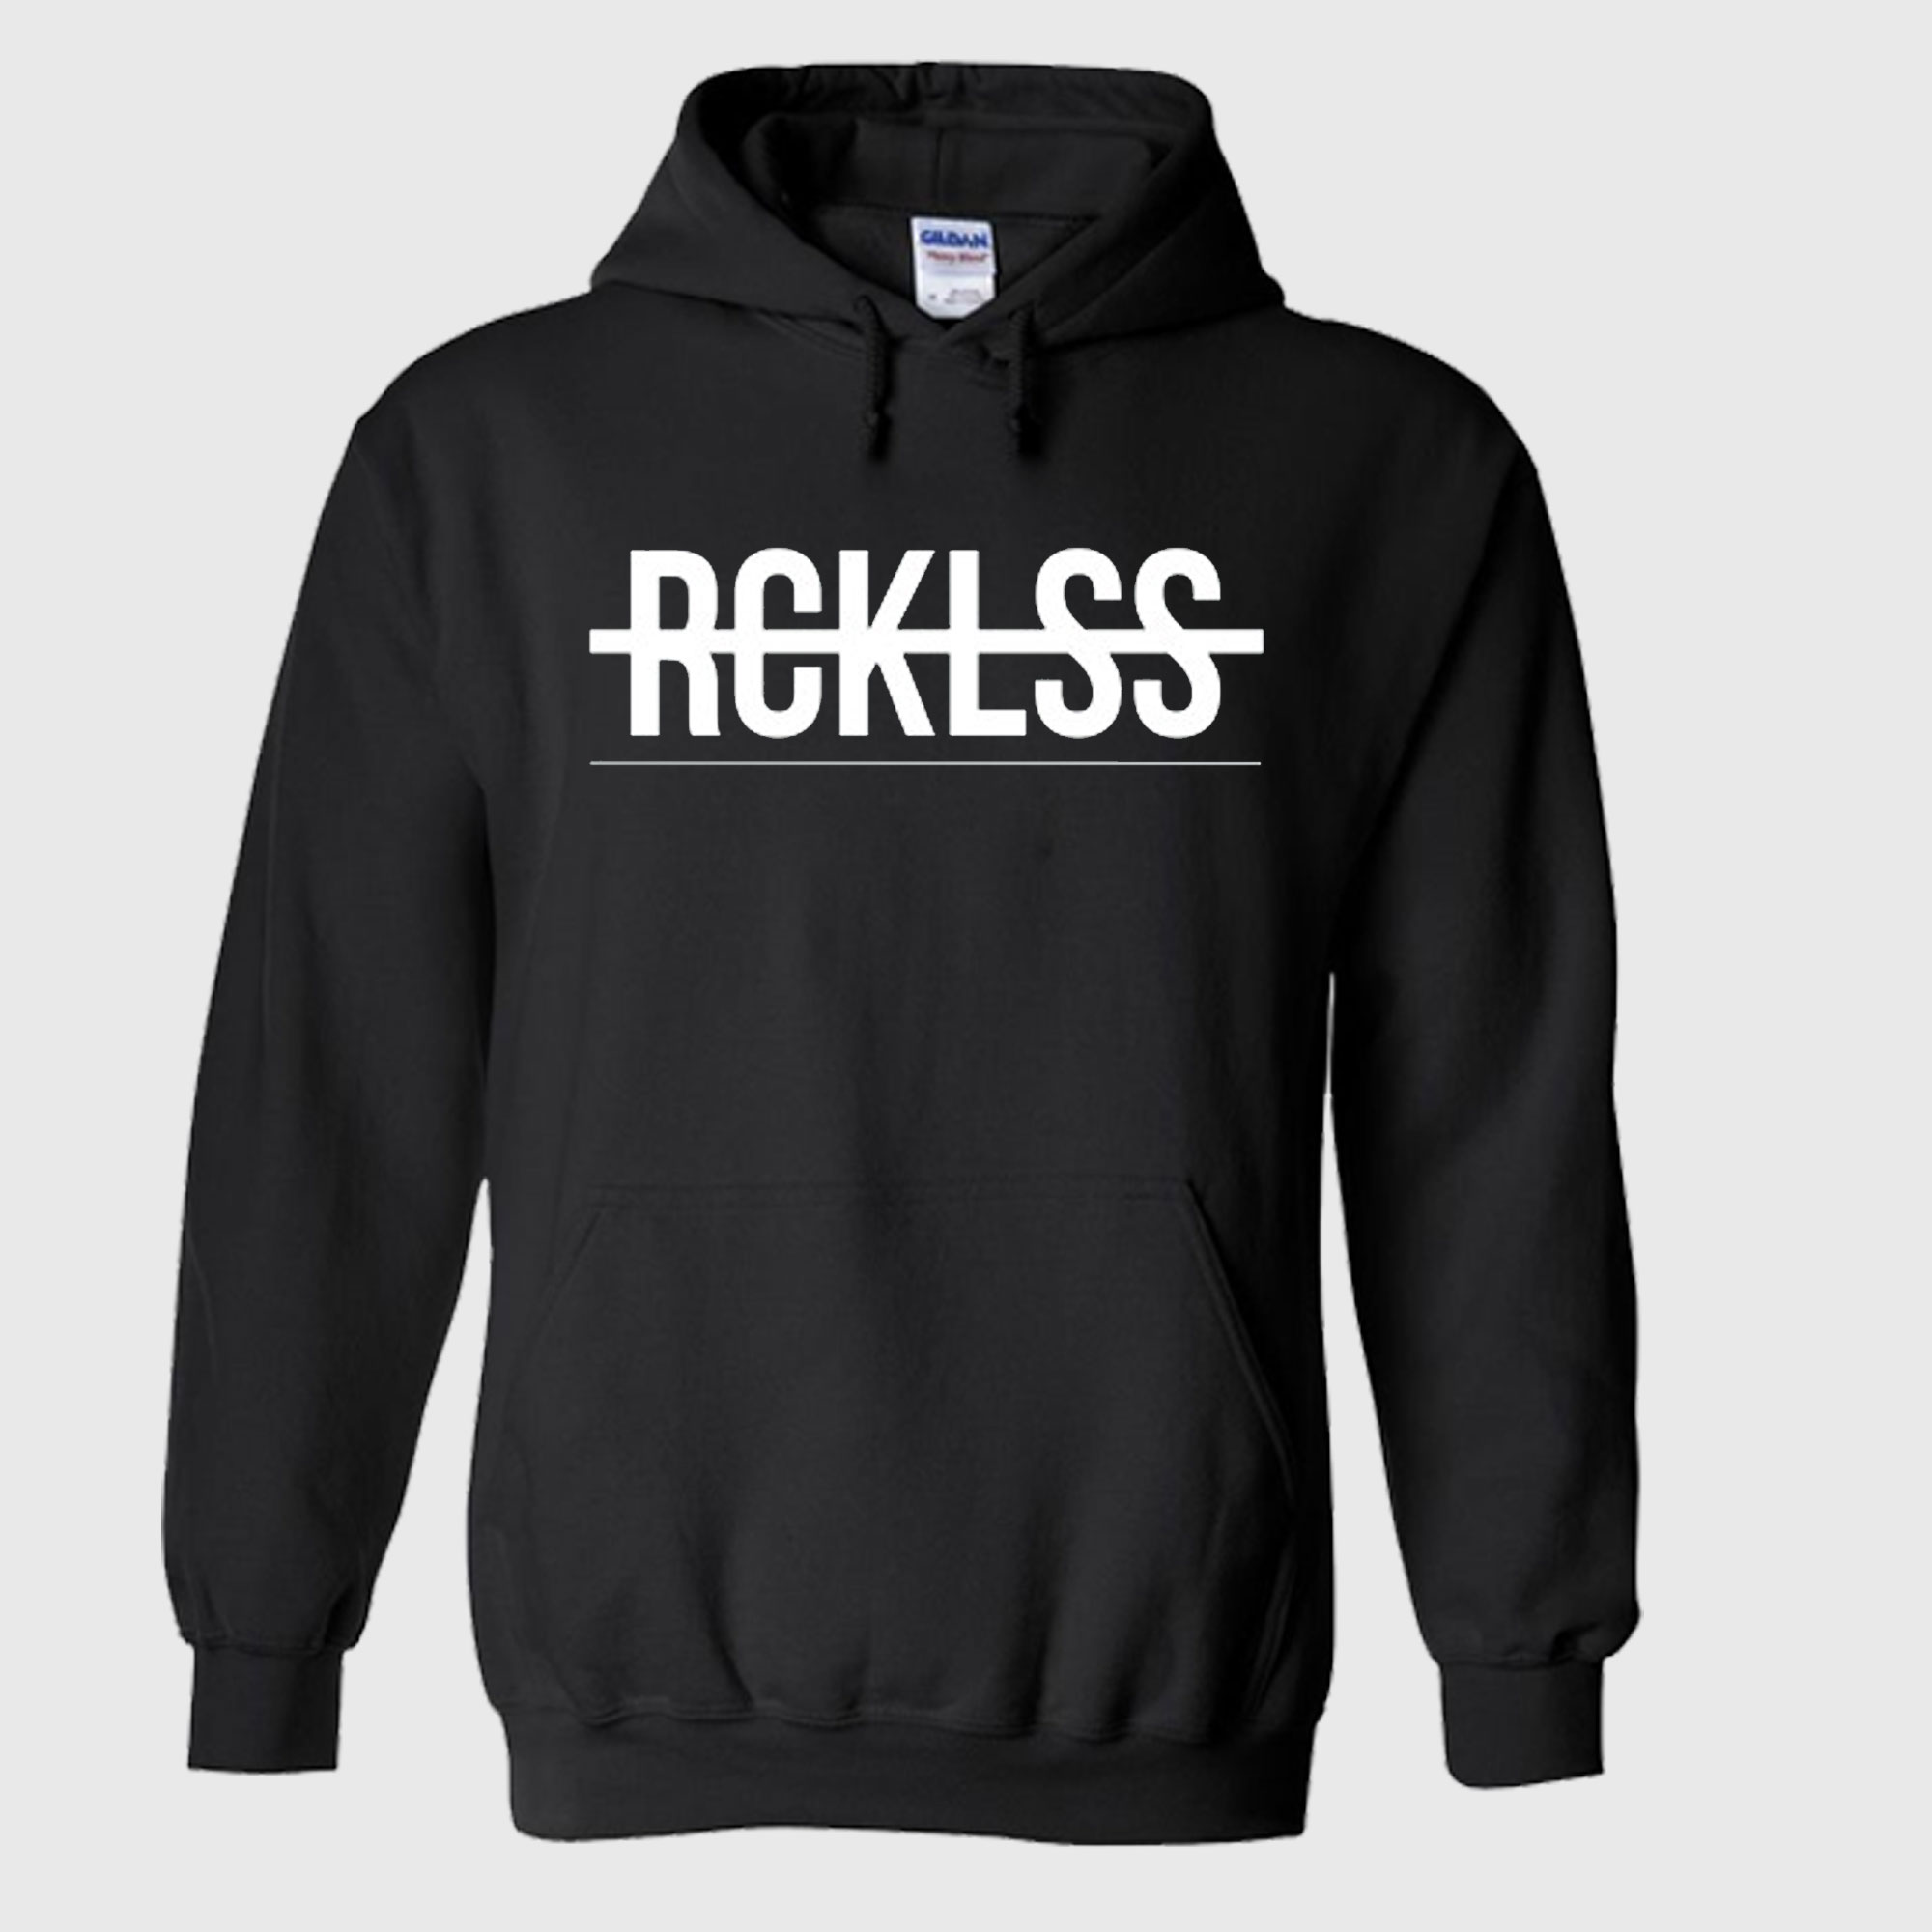 rcklss hoodie